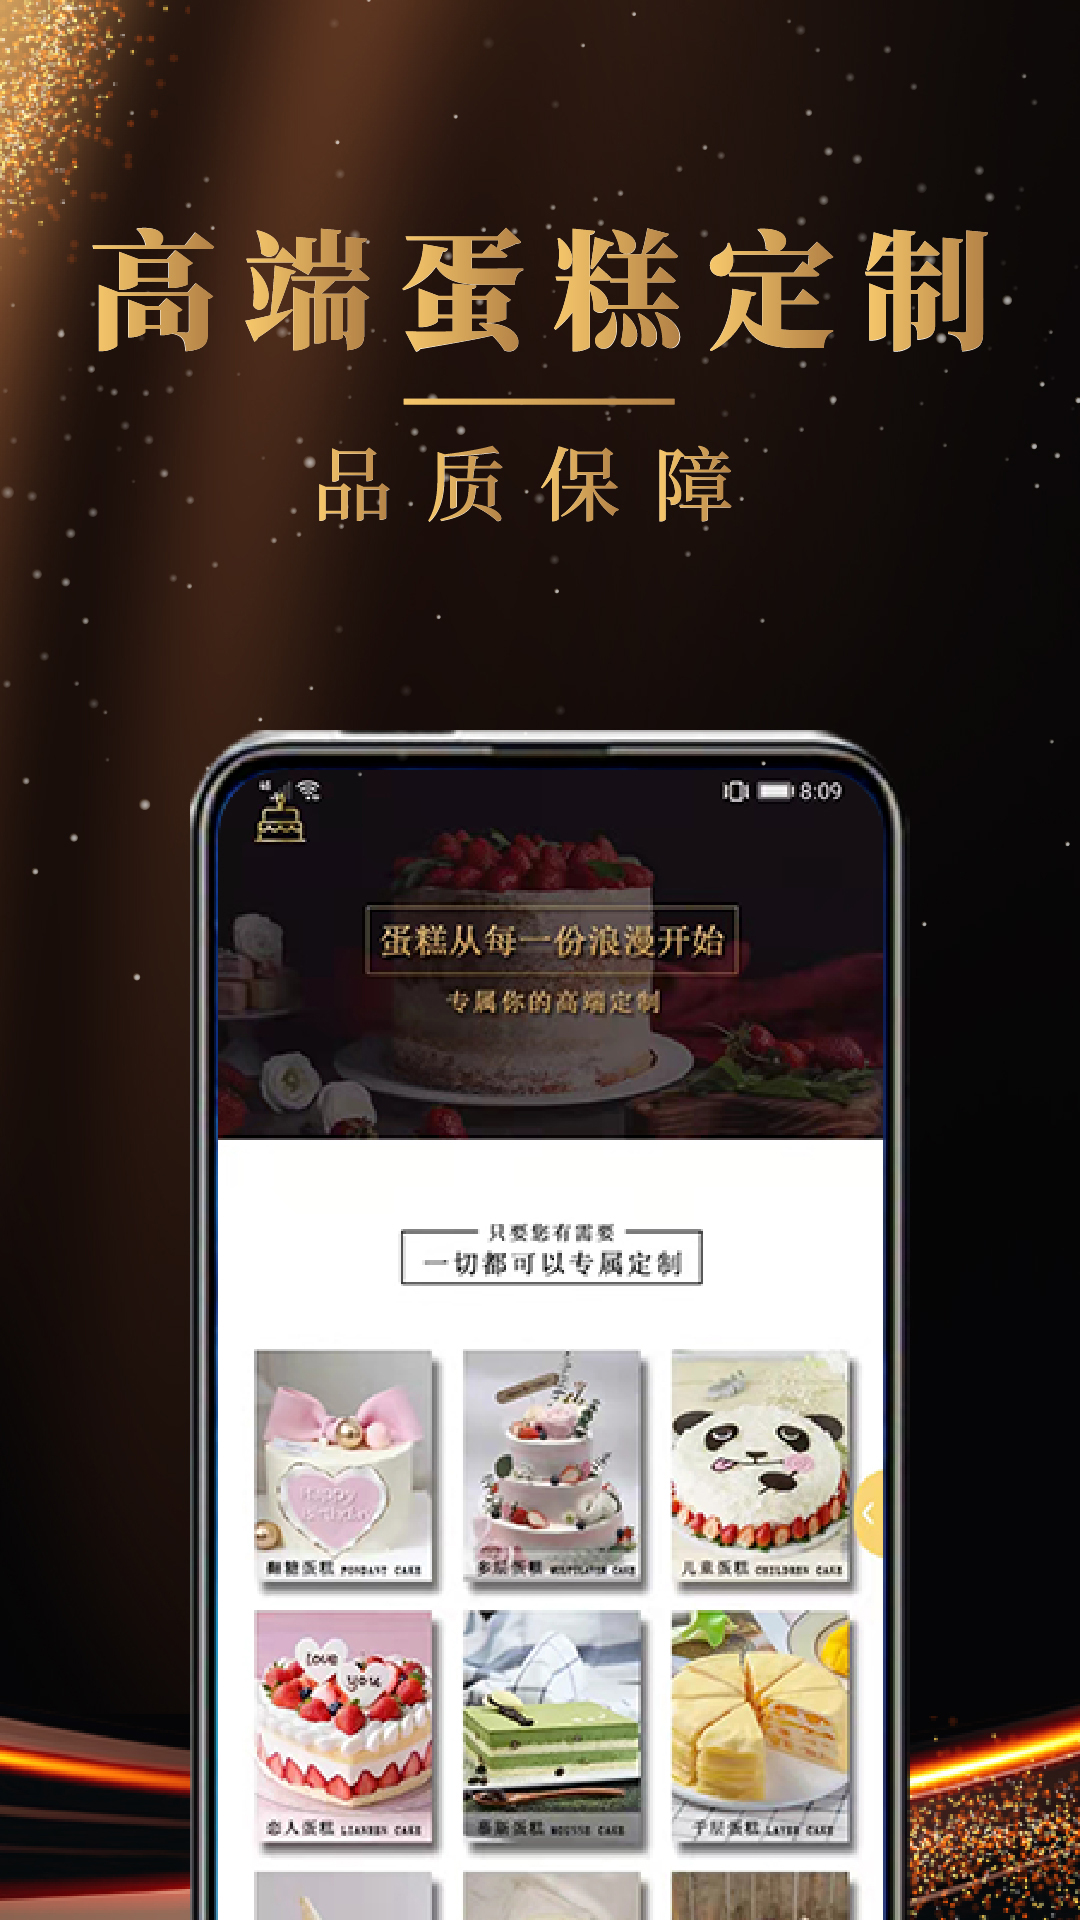 蛋糕之家app